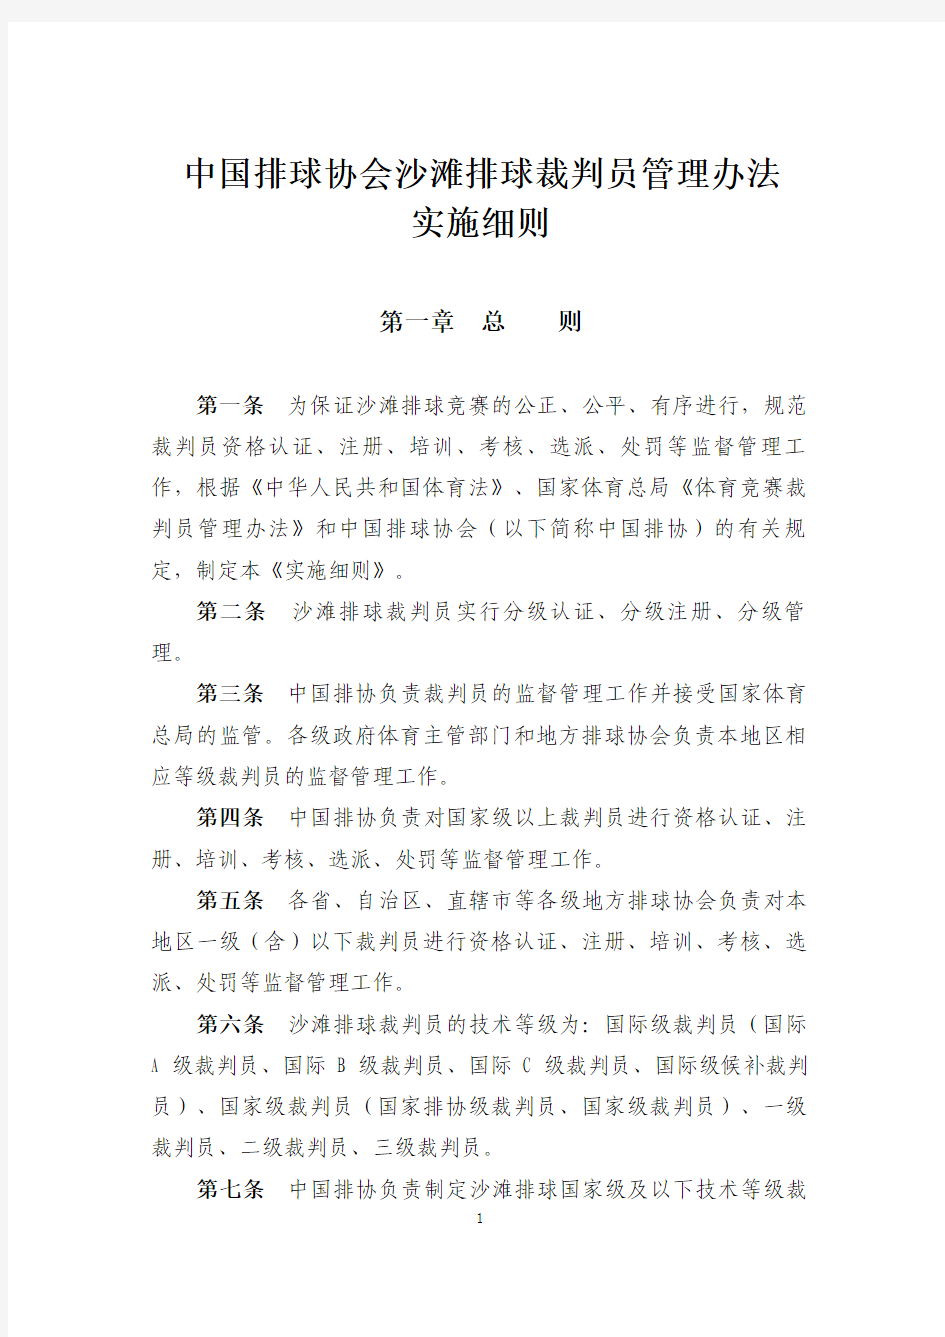 中国排球协会沙滩排球裁判员管理实施细则(征求意见稿)-2